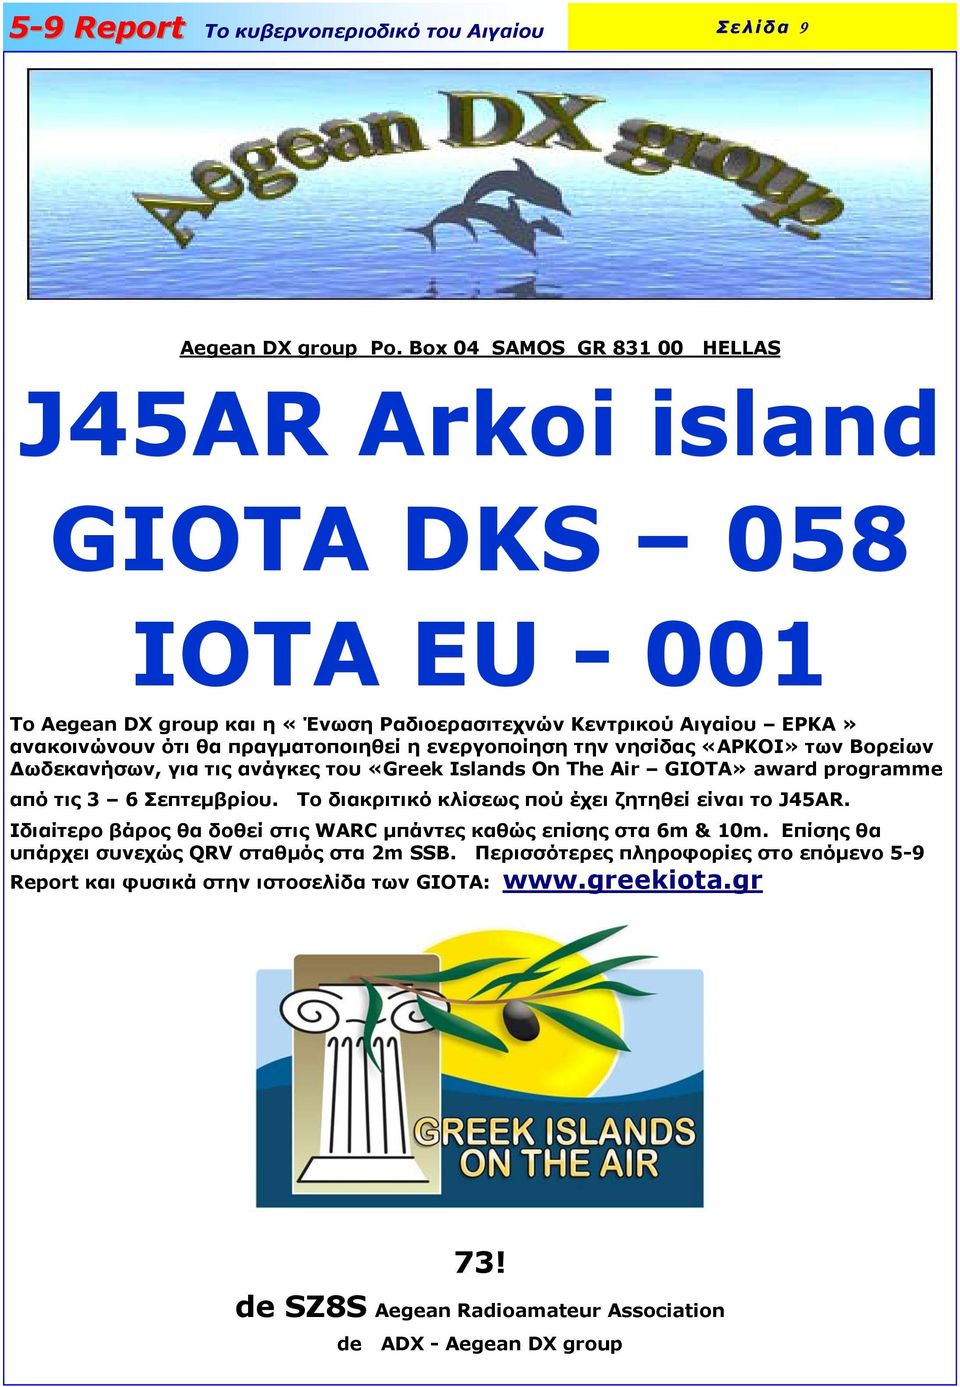 πραγματοποιηθεί η ενεργοποίηση την νησίδας «ΑΡΚΟΙ» των Βορείων Δωδεκανήσων, για τις ανάγκες του «Greek Islands On The Air GIOTA» award programme από τις 3 6 Σεπτεμβρίου.